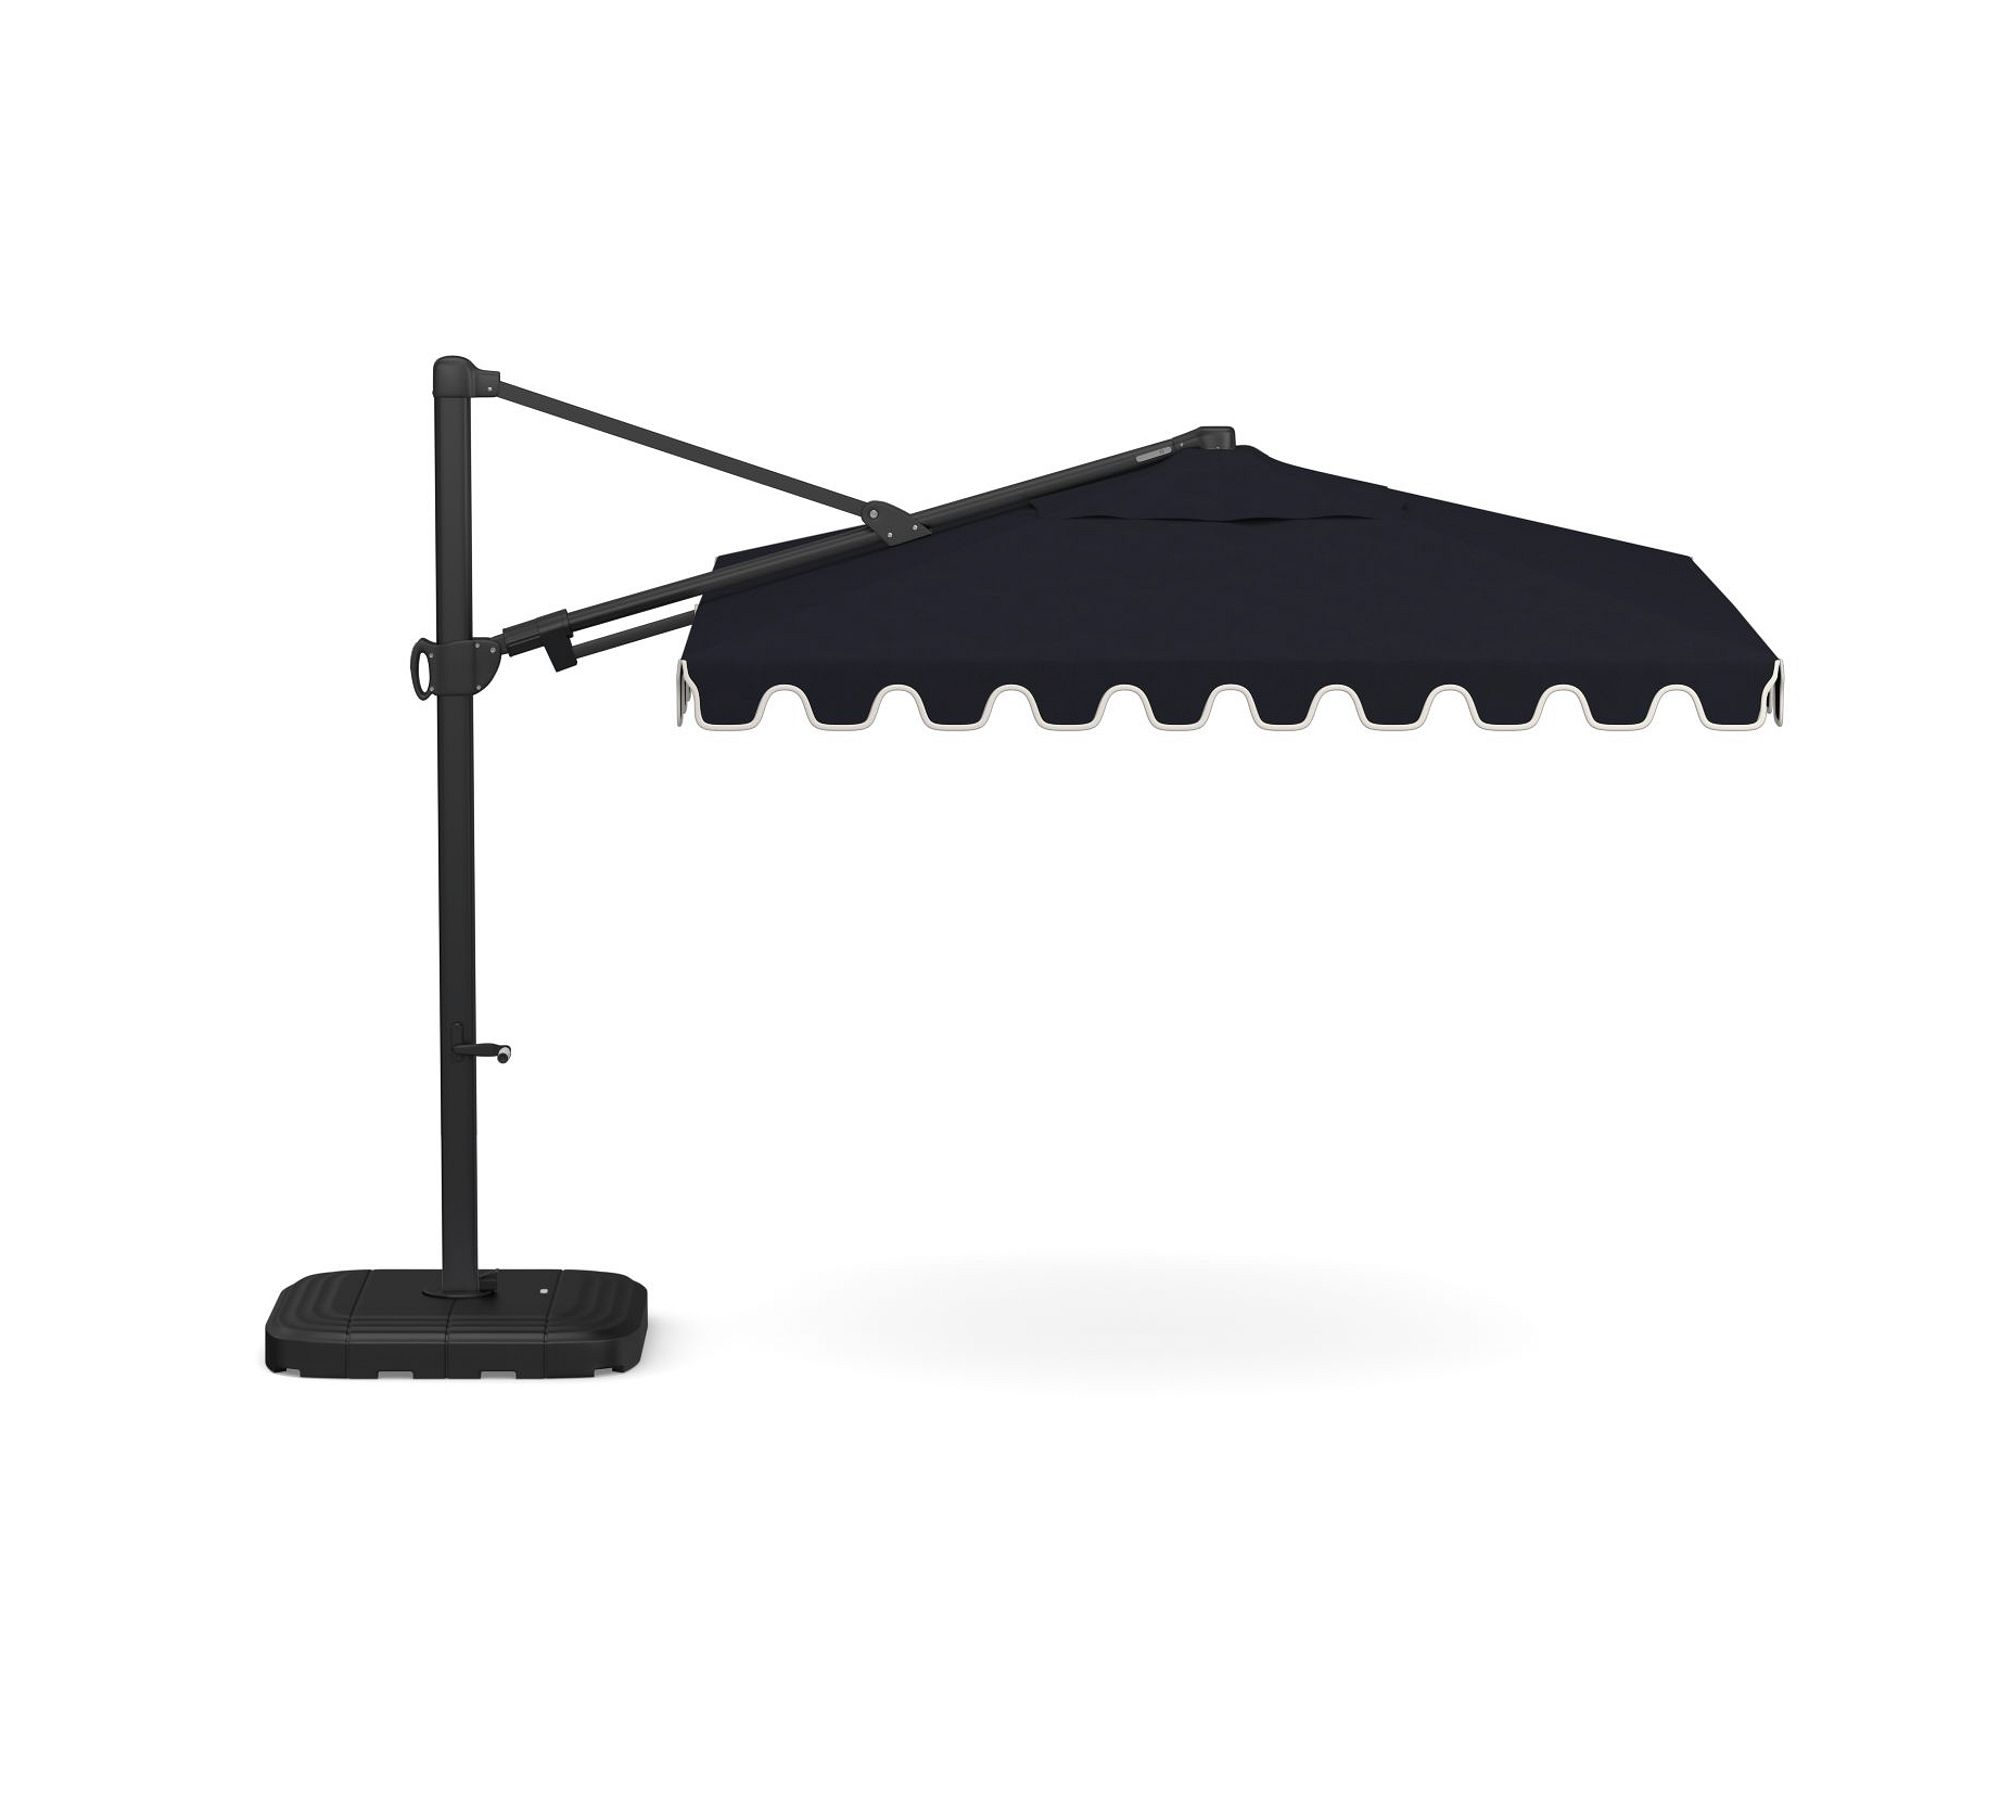 Premium 10' Square Portofino Cantilever Outdoor Patio Umbrella - Rustproof Aluminum Frame with Base